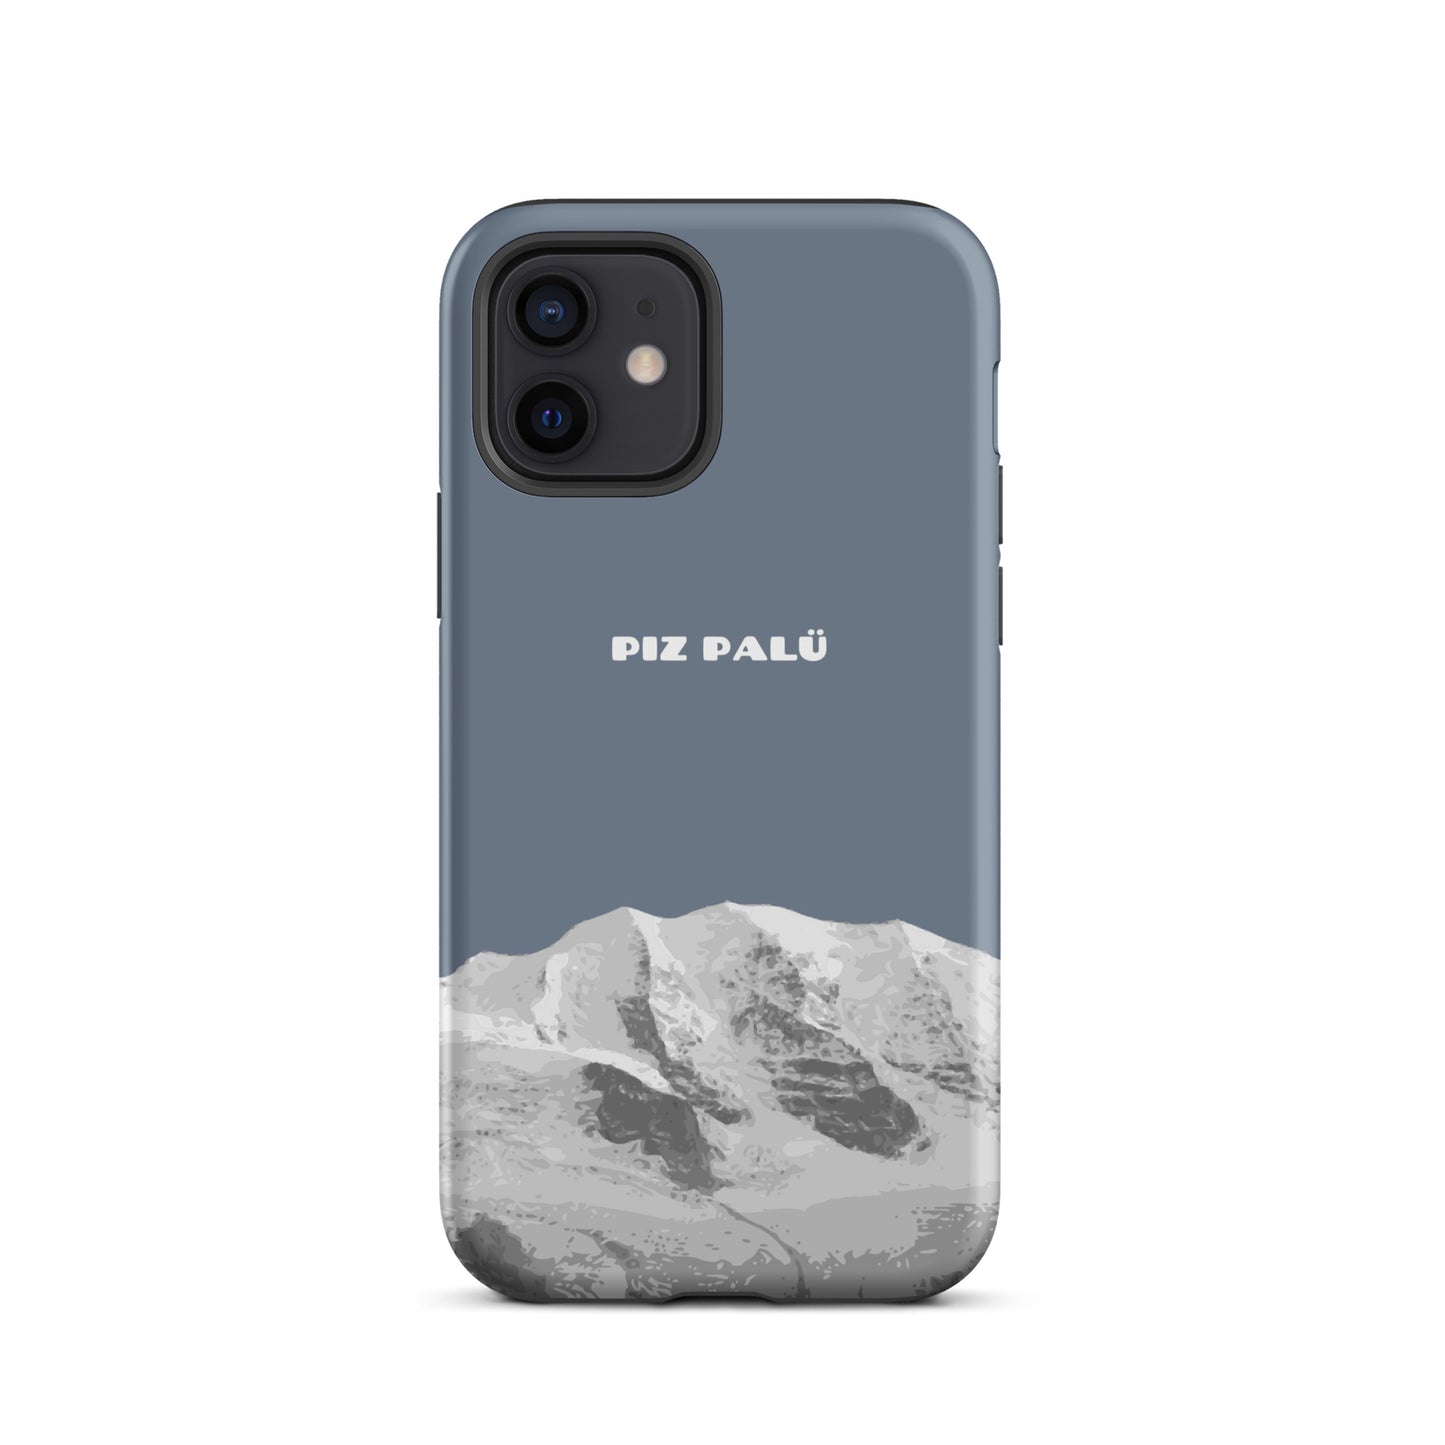 Hülle für das iPhone 12 von Apple in der Farbe Schiefergrau, dass den Piz Palü in Graubünden zeigt.